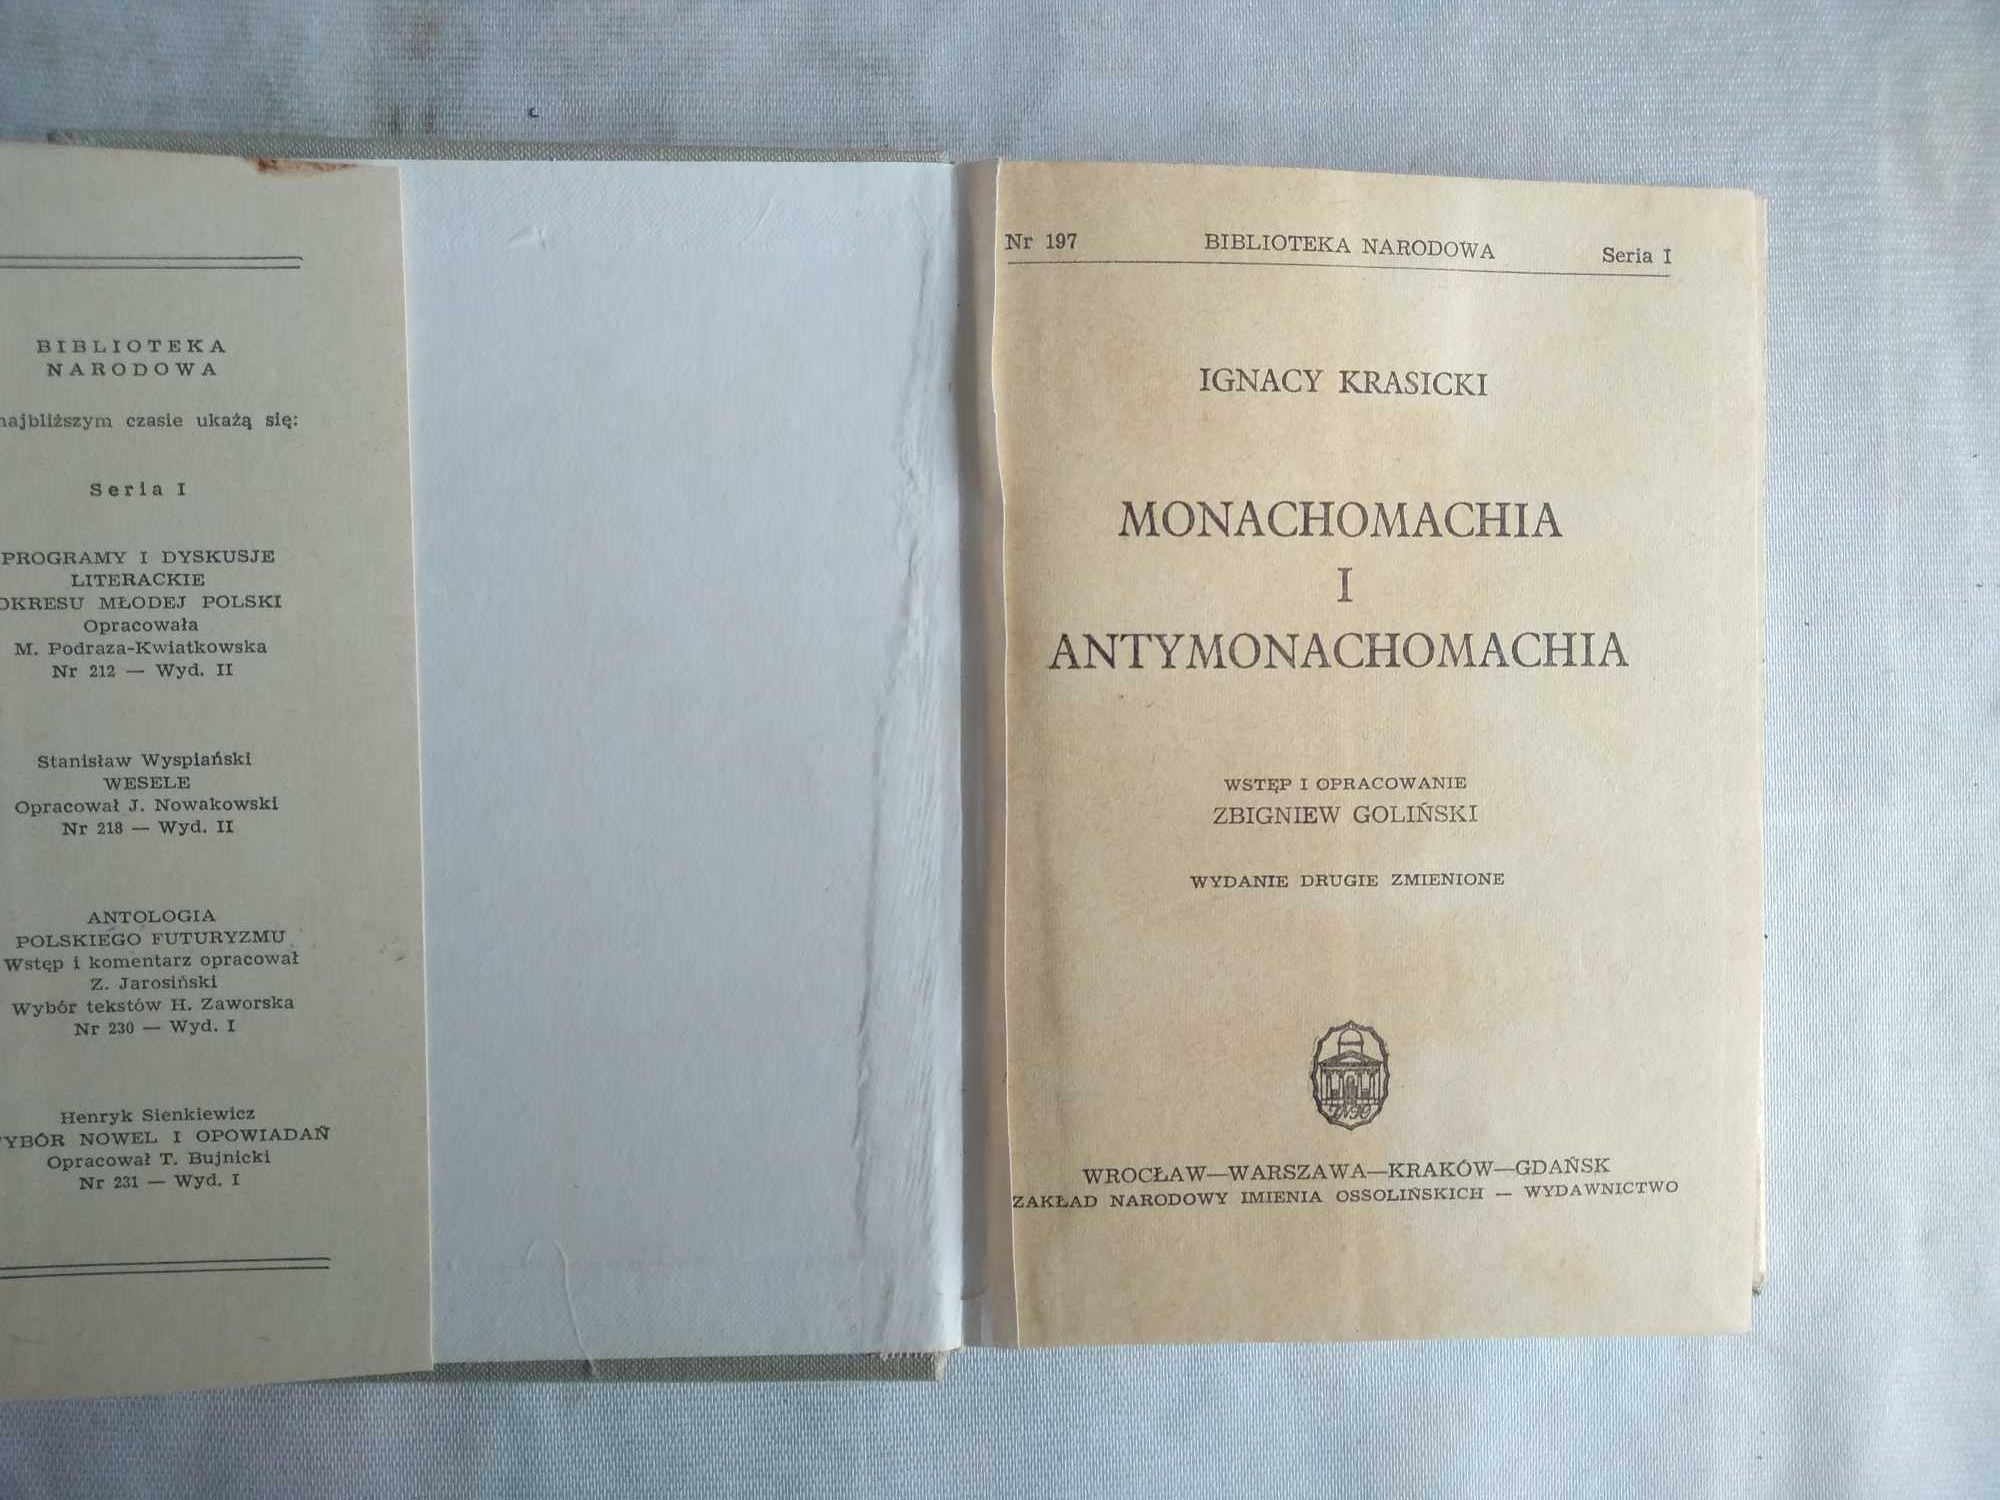 "Monachomachia i Antymonachomachia" Ignacy Krasicki